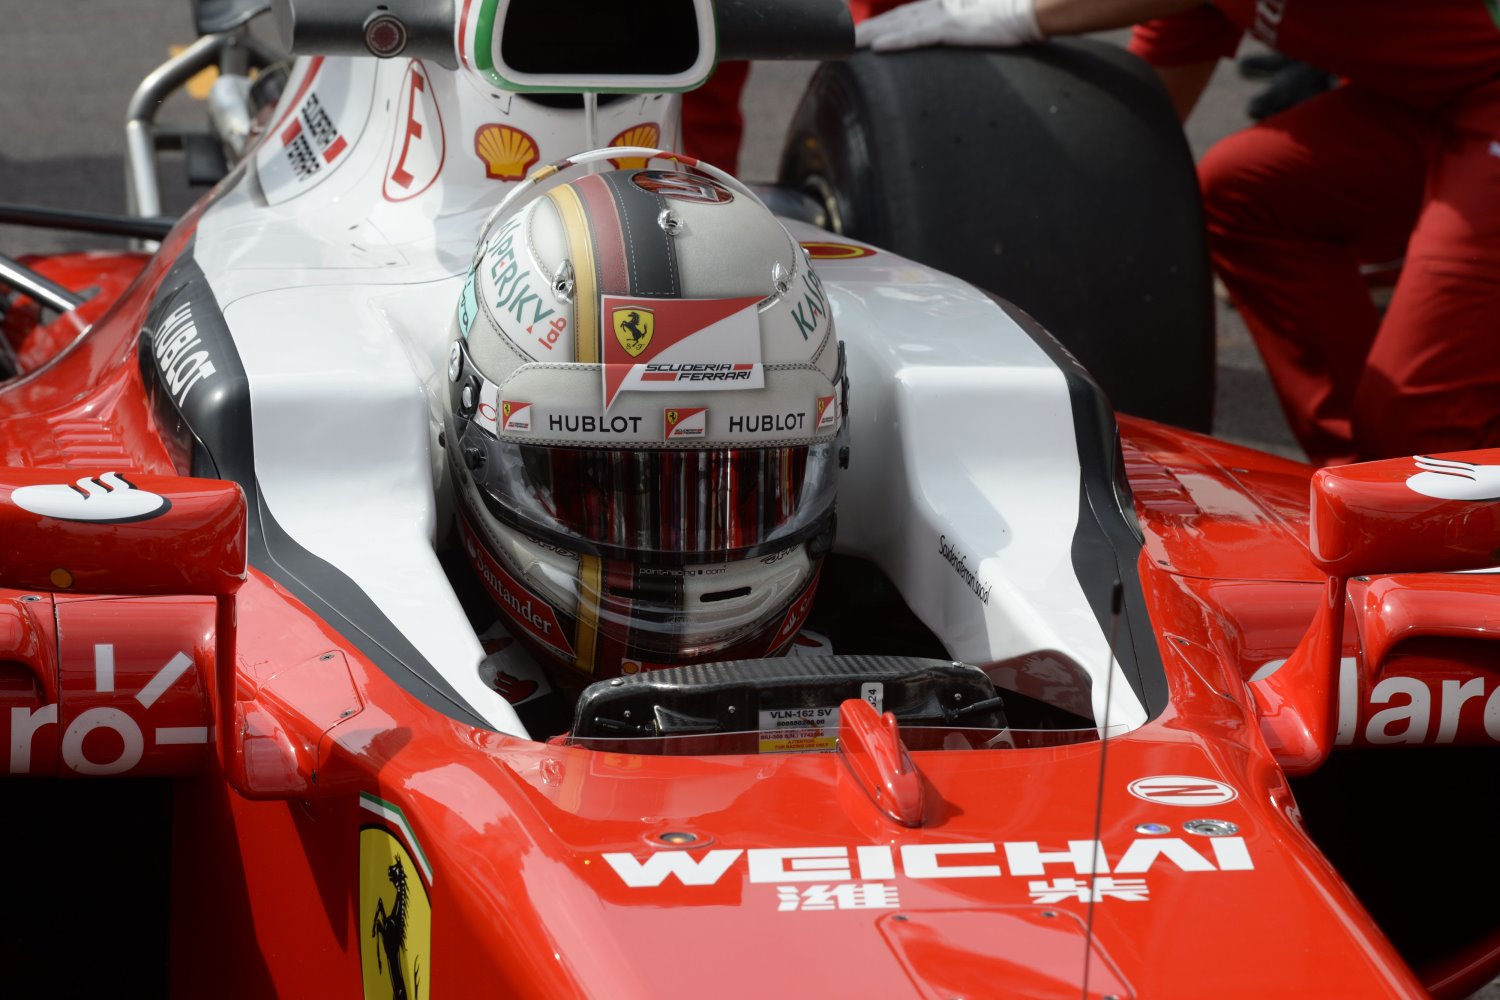 Choking under Ferrari pressure, Vettel hit the barriers twice on Thursday